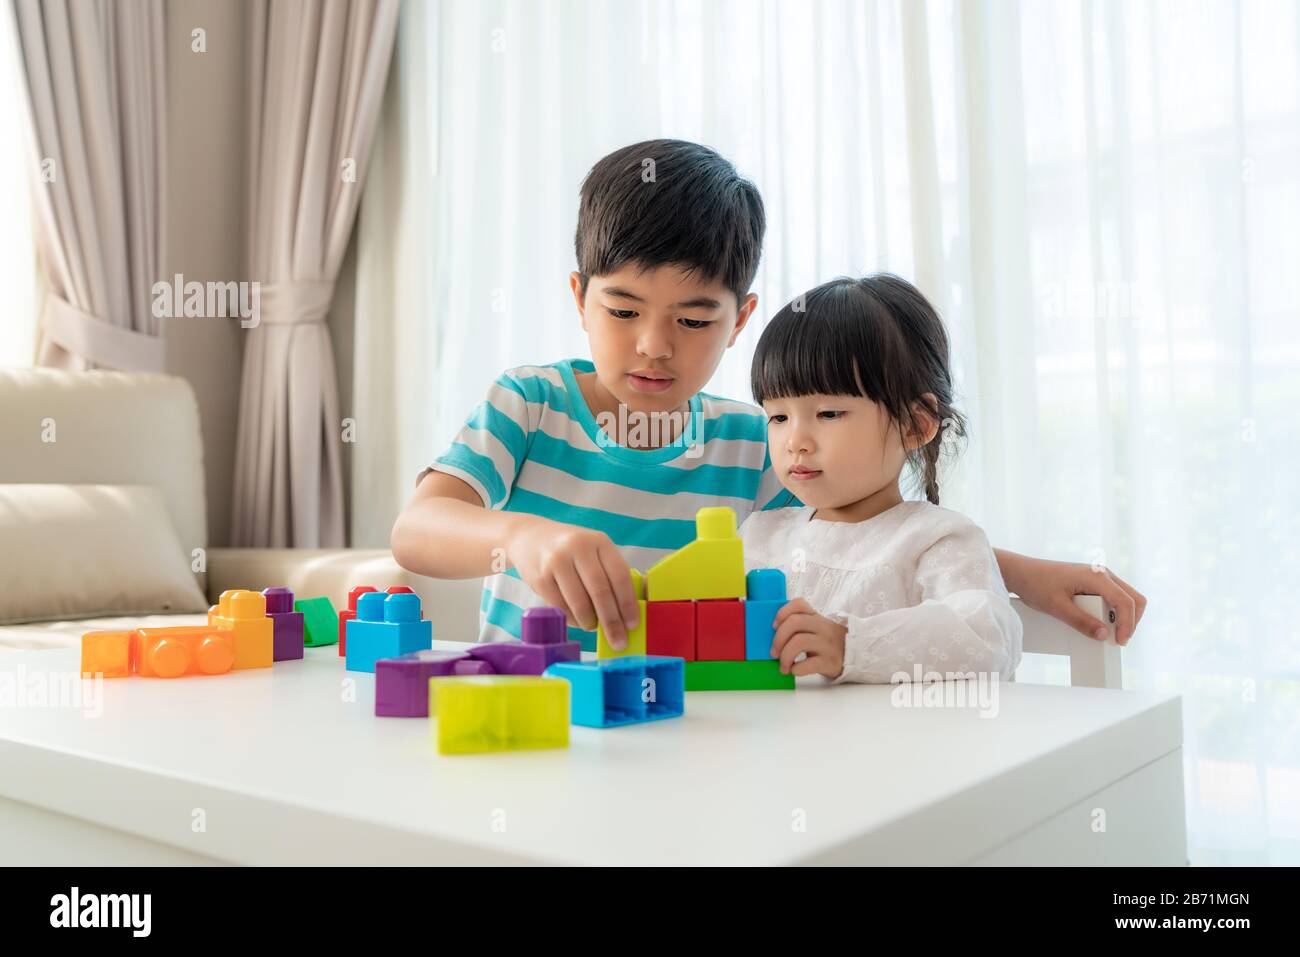 Un joli frère asiatique et sa sœur jouent avec un concepteur de blocs de jouets sur la table dans le salon à la maison. Concept de liaison de frère, d'amitié et d'apprentissage Banque D'Images